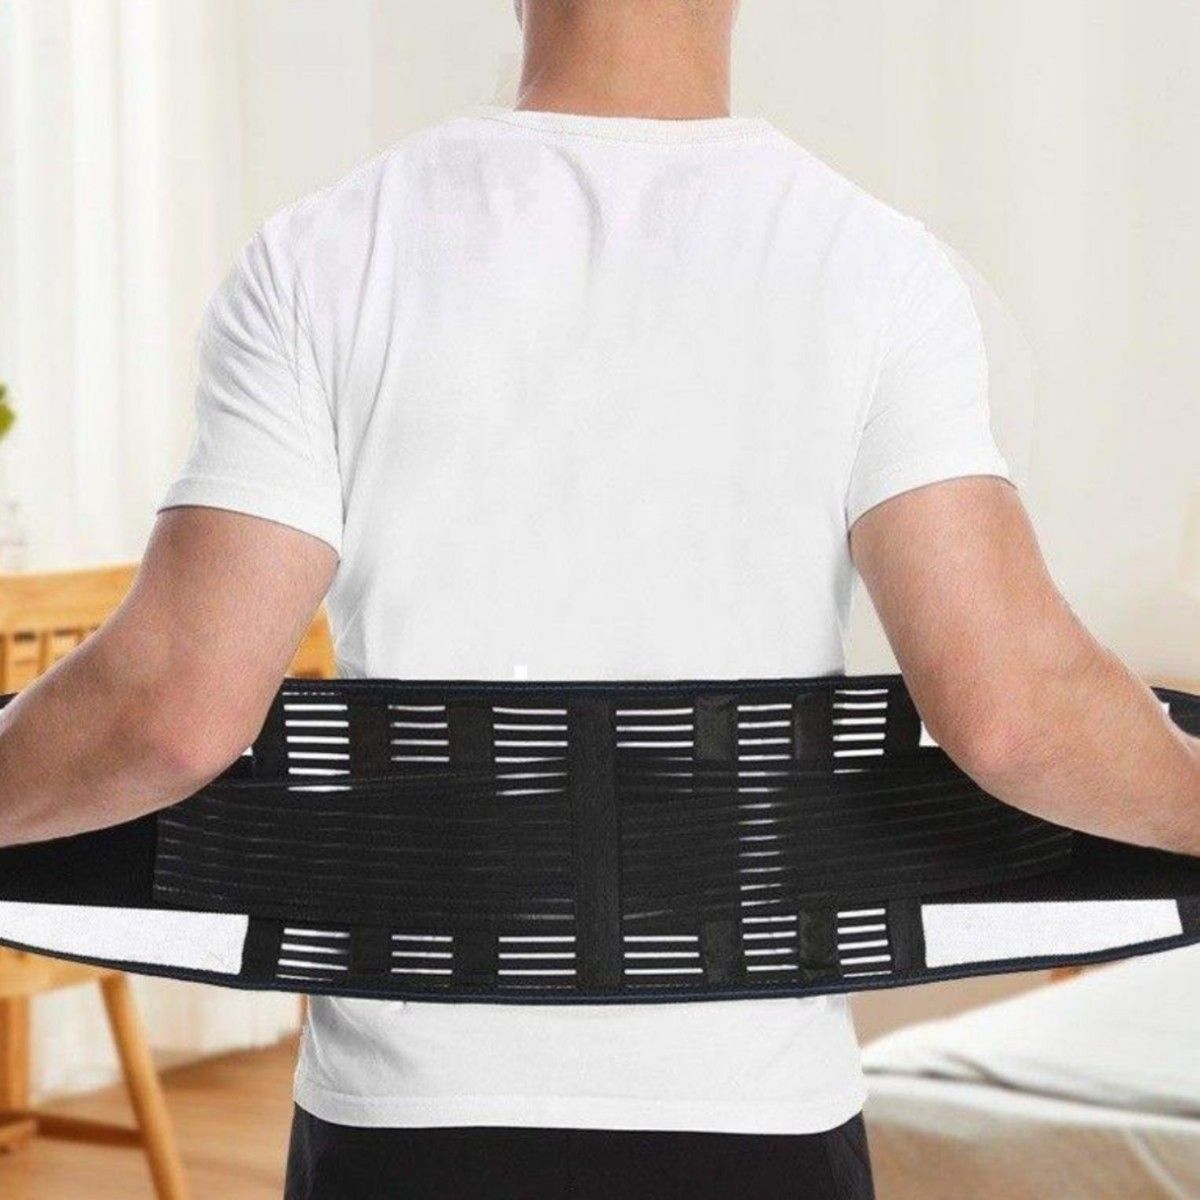 Mサイズ 腰痛 ベルト 医療用 コルセット サポーター整体 通気性 伸縮 ダイエット 矯正 ぎっくり腰 男女兼用 